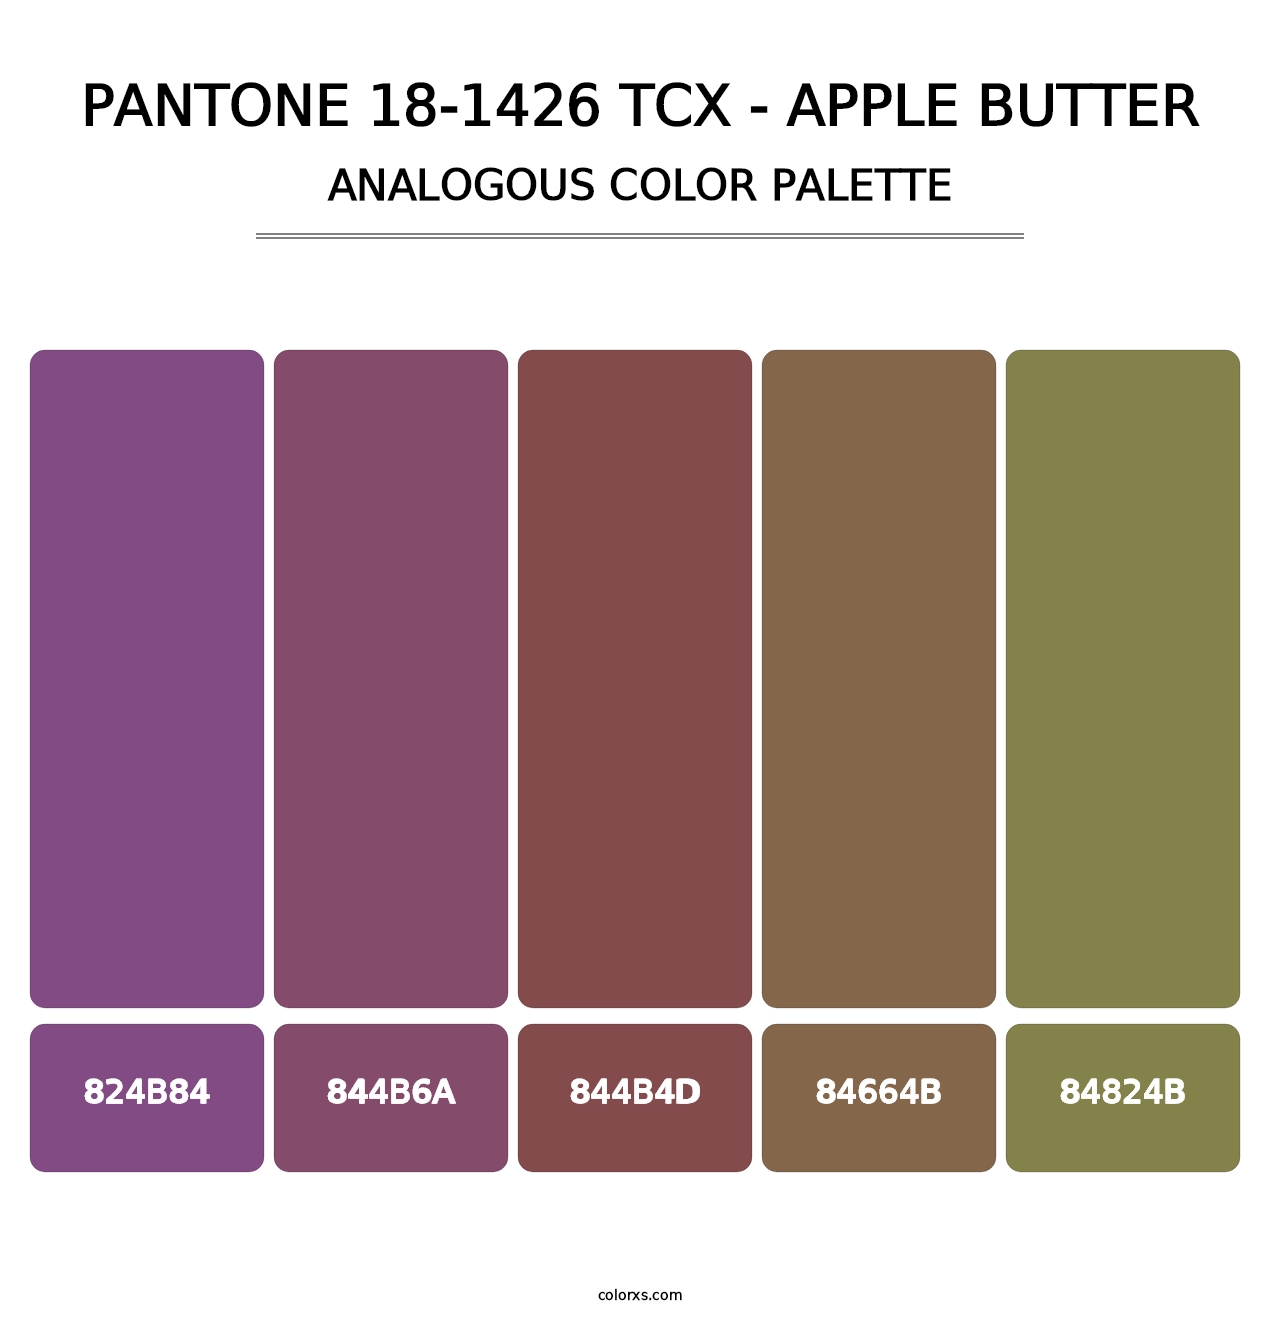 PANTONE 18-1426 TCX - Apple Butter - Analogous Color Palette